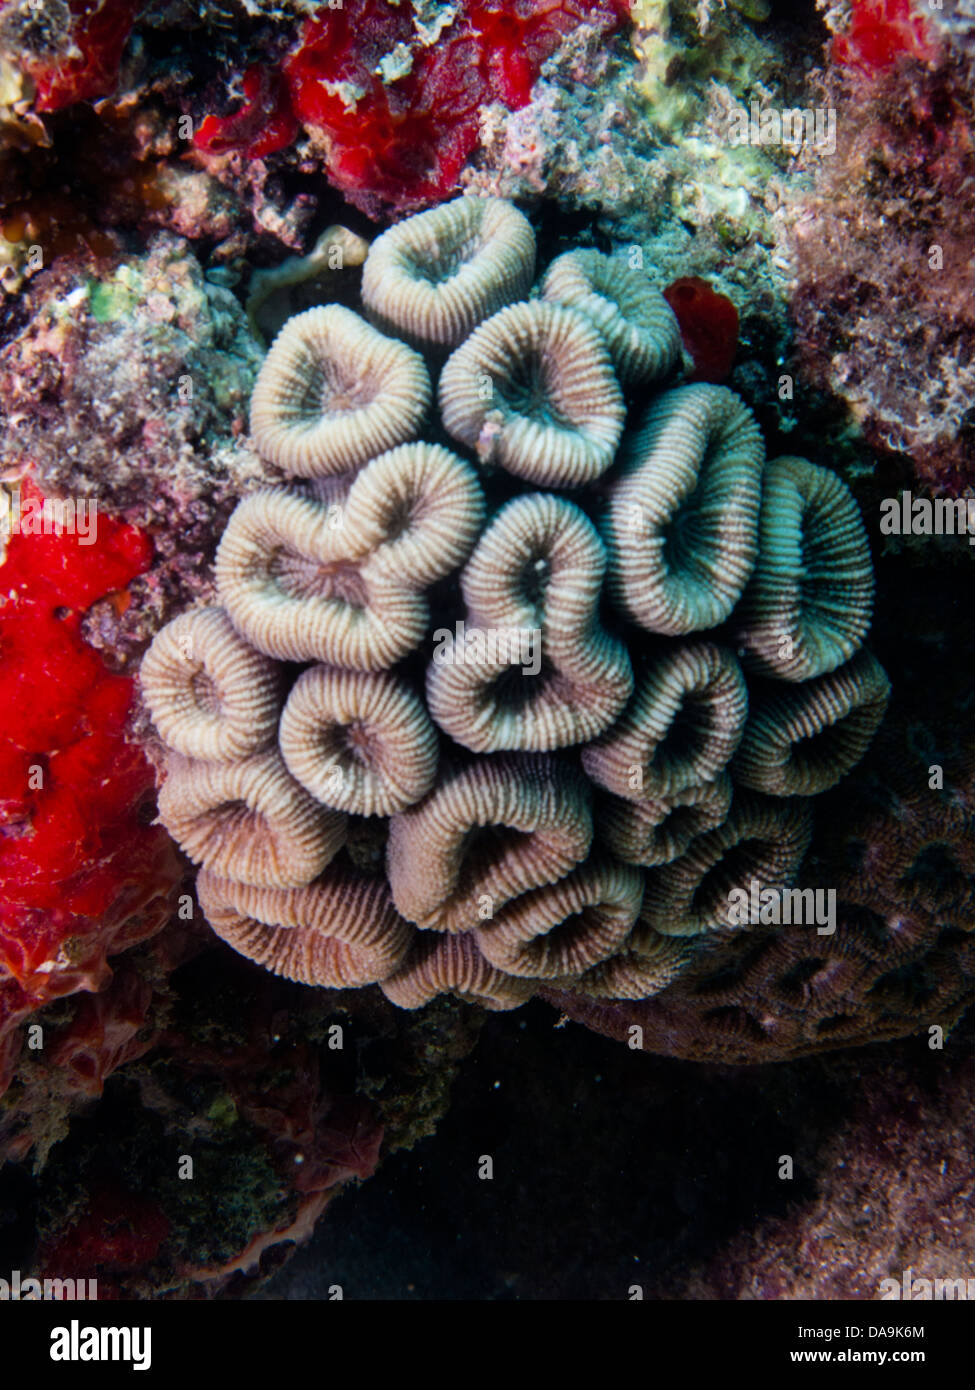 Coral reef Mussismilia endémique du Brésil harttii Abrolhos sous-marine National Marine Park, Bahia, Brésil Banque D'Images